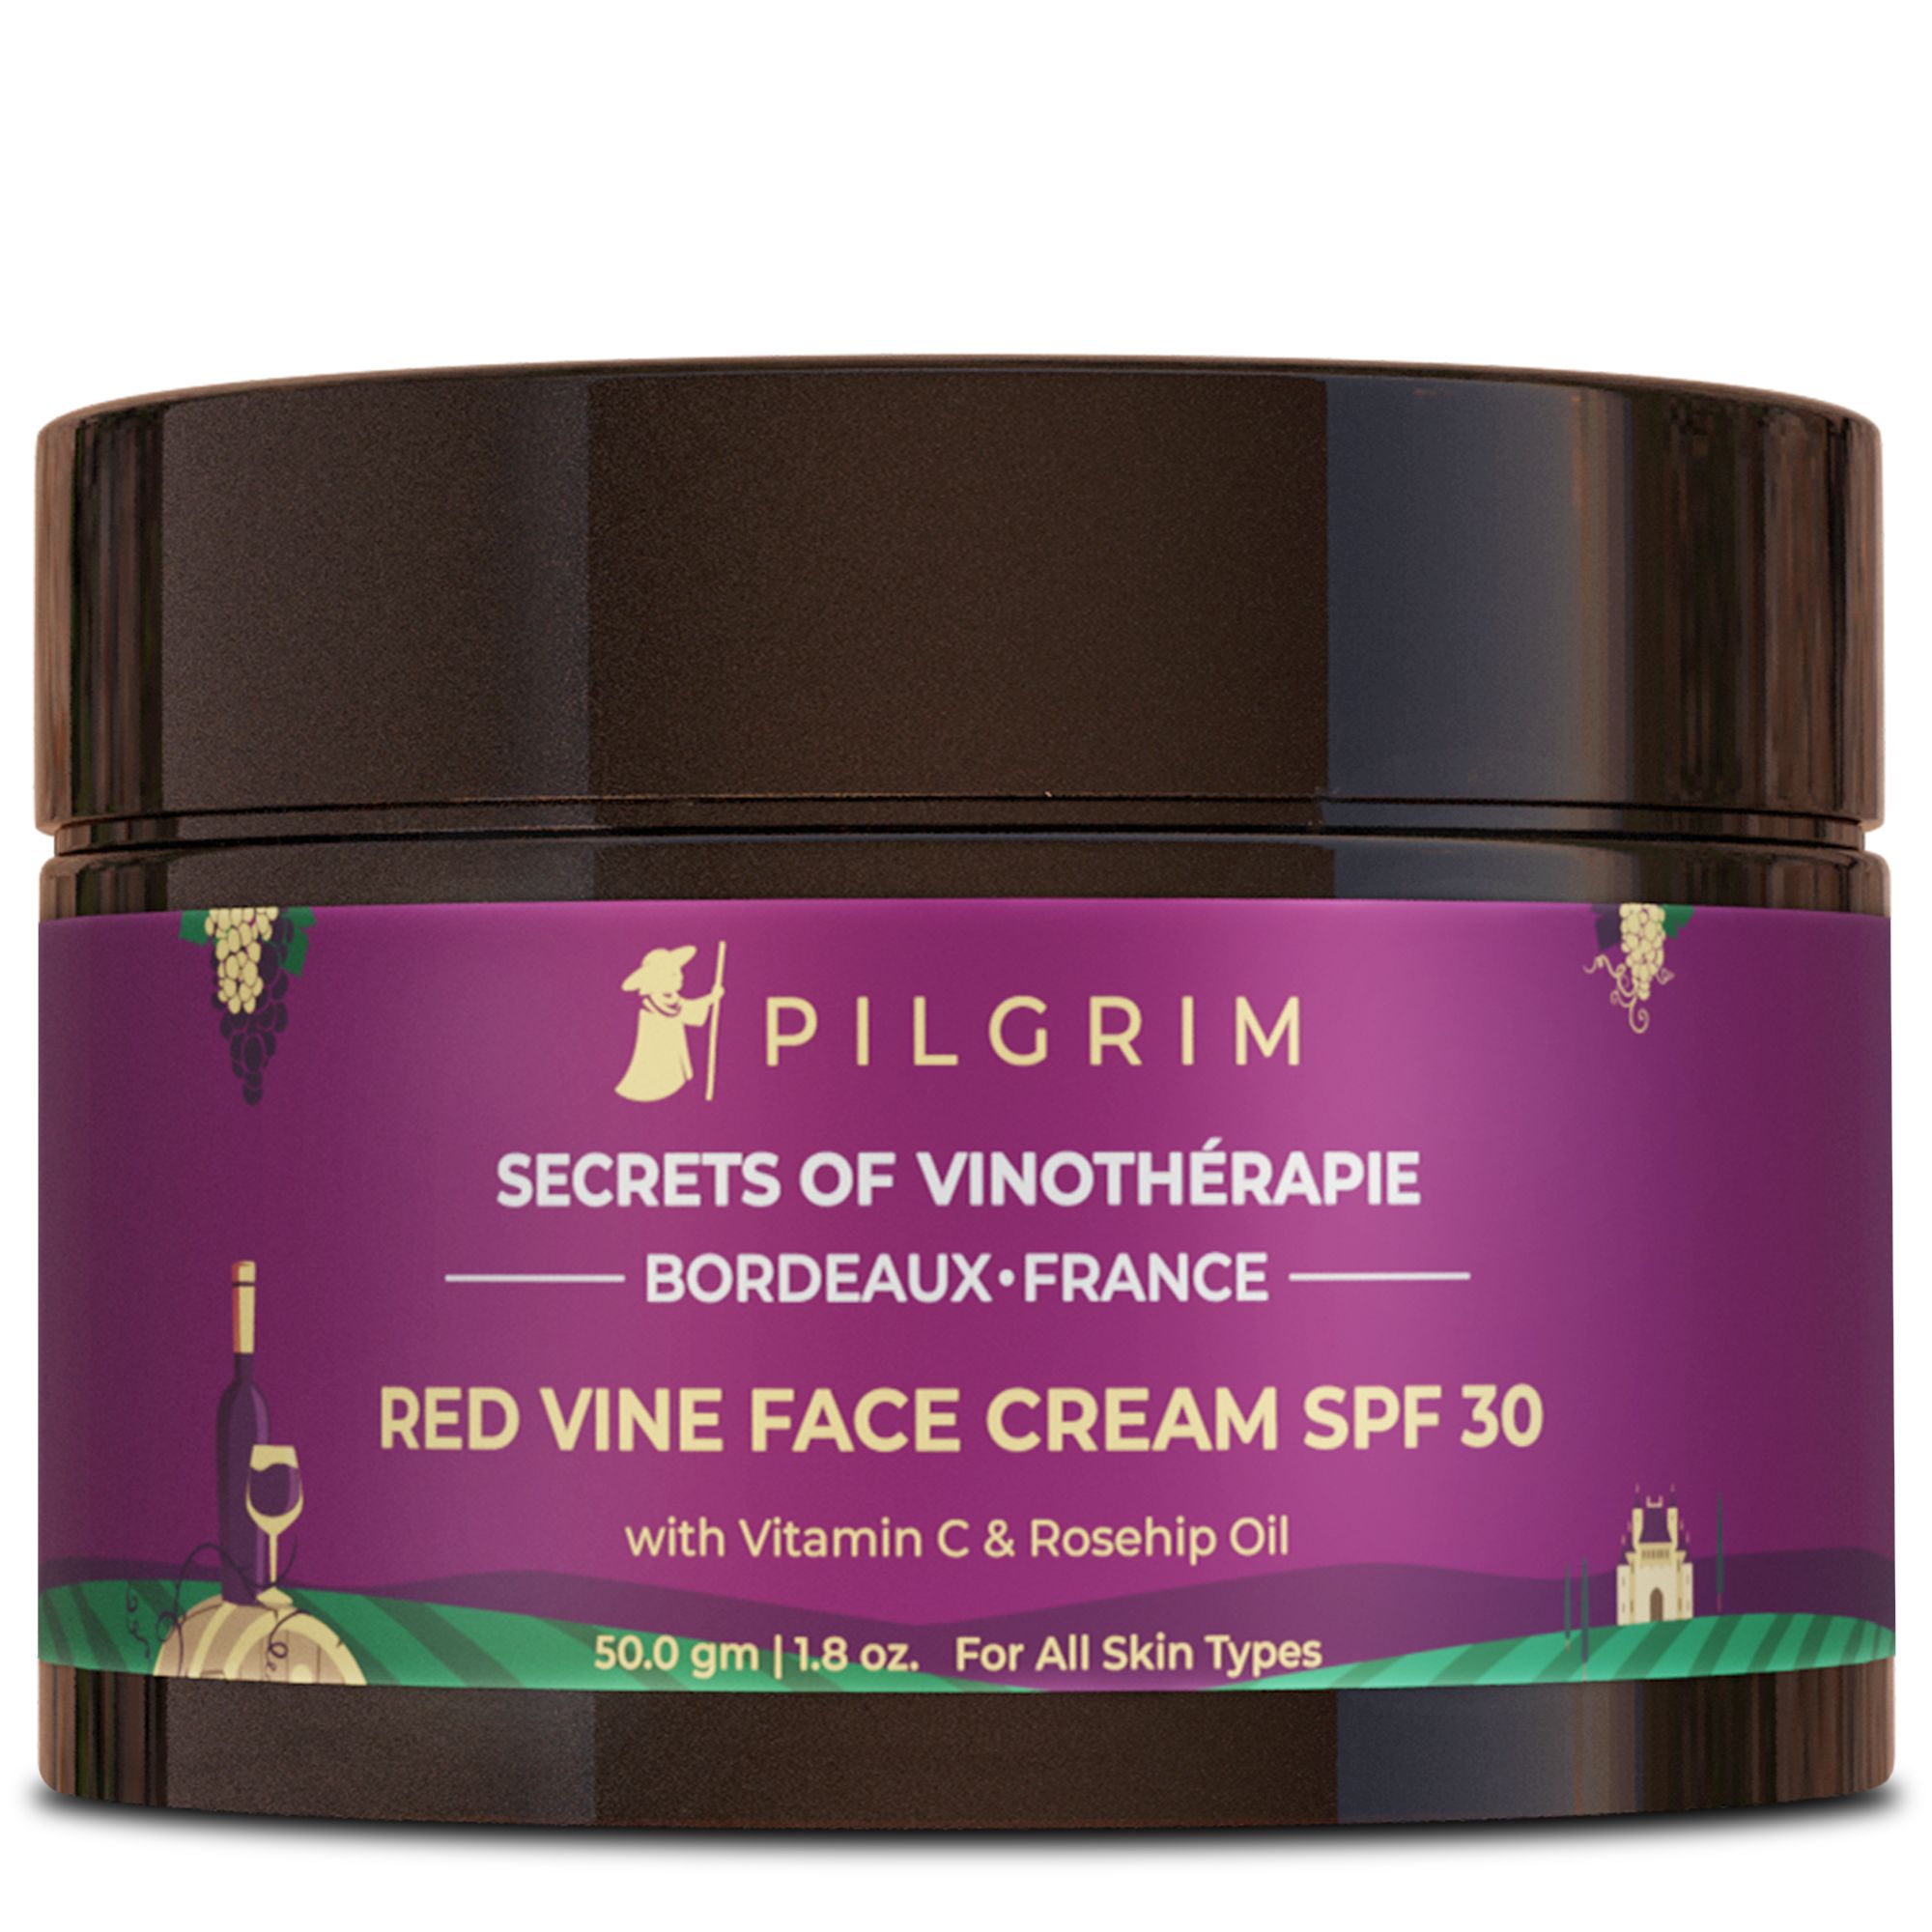 Pilgrim Secrets of Vinothérapie, Bordeaux, France Face Cream